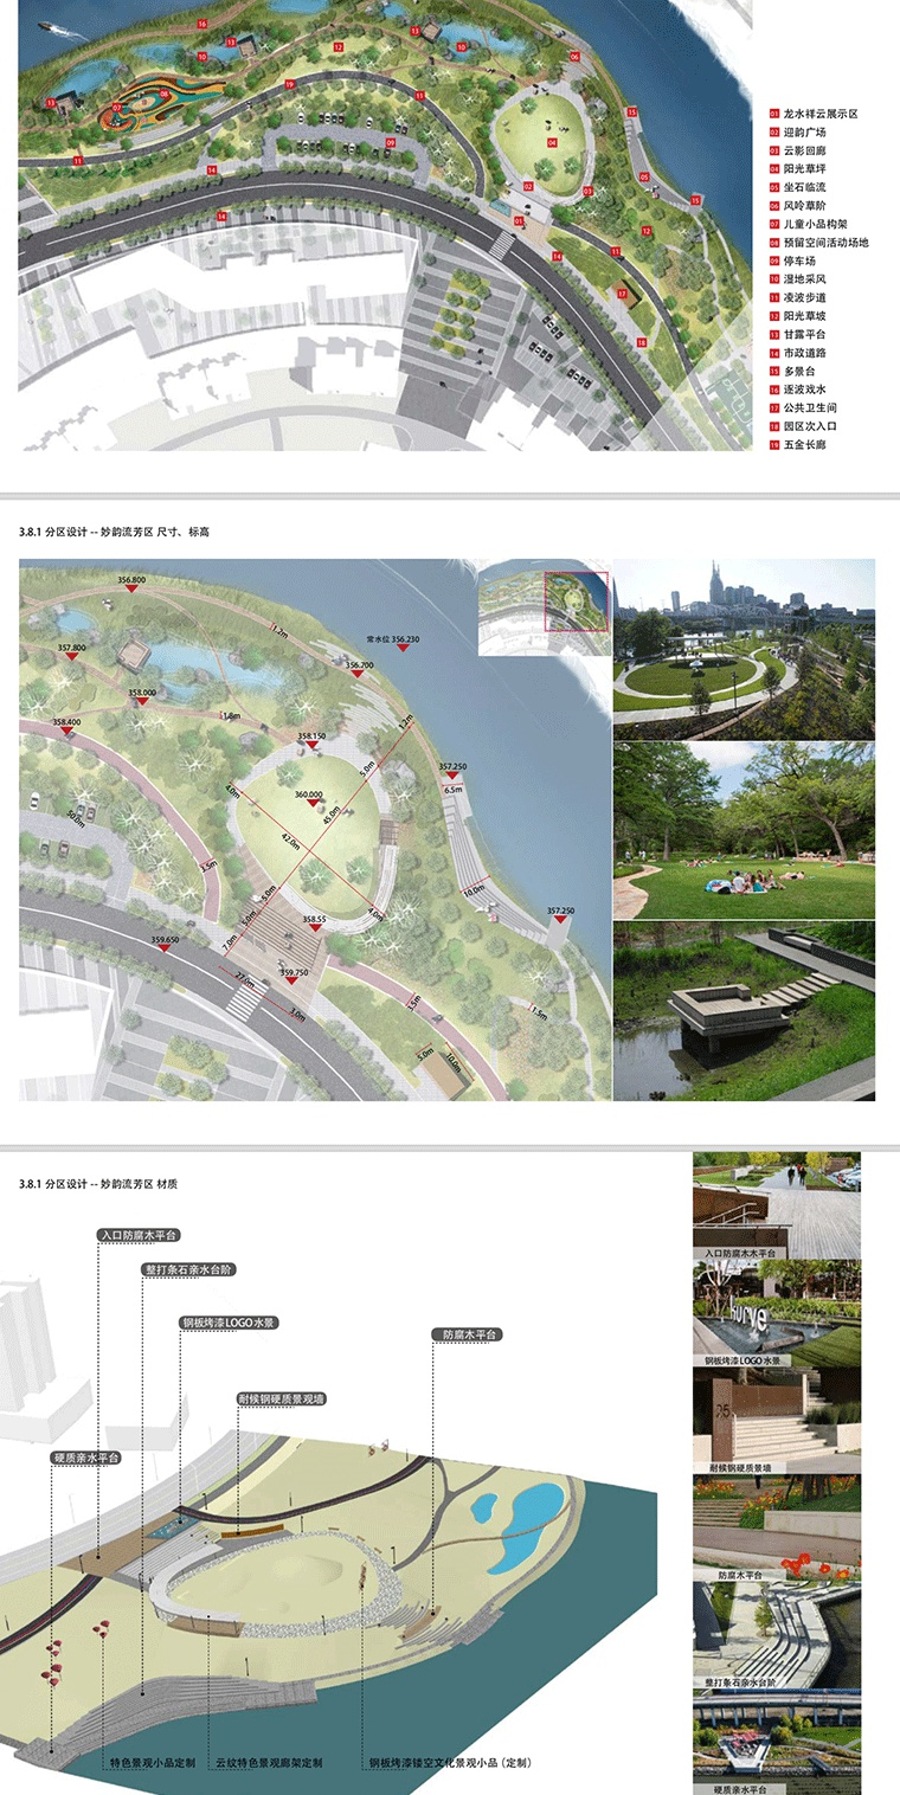 大足龙水滨河景观设计-龙水河岸整治及沿河道路公园景观方案文本+SU+PSD+ID模版indesign排版源文件-筑图-建筑景观素材,LUMION模型,方案文本,CAD施工图,SU模型下载